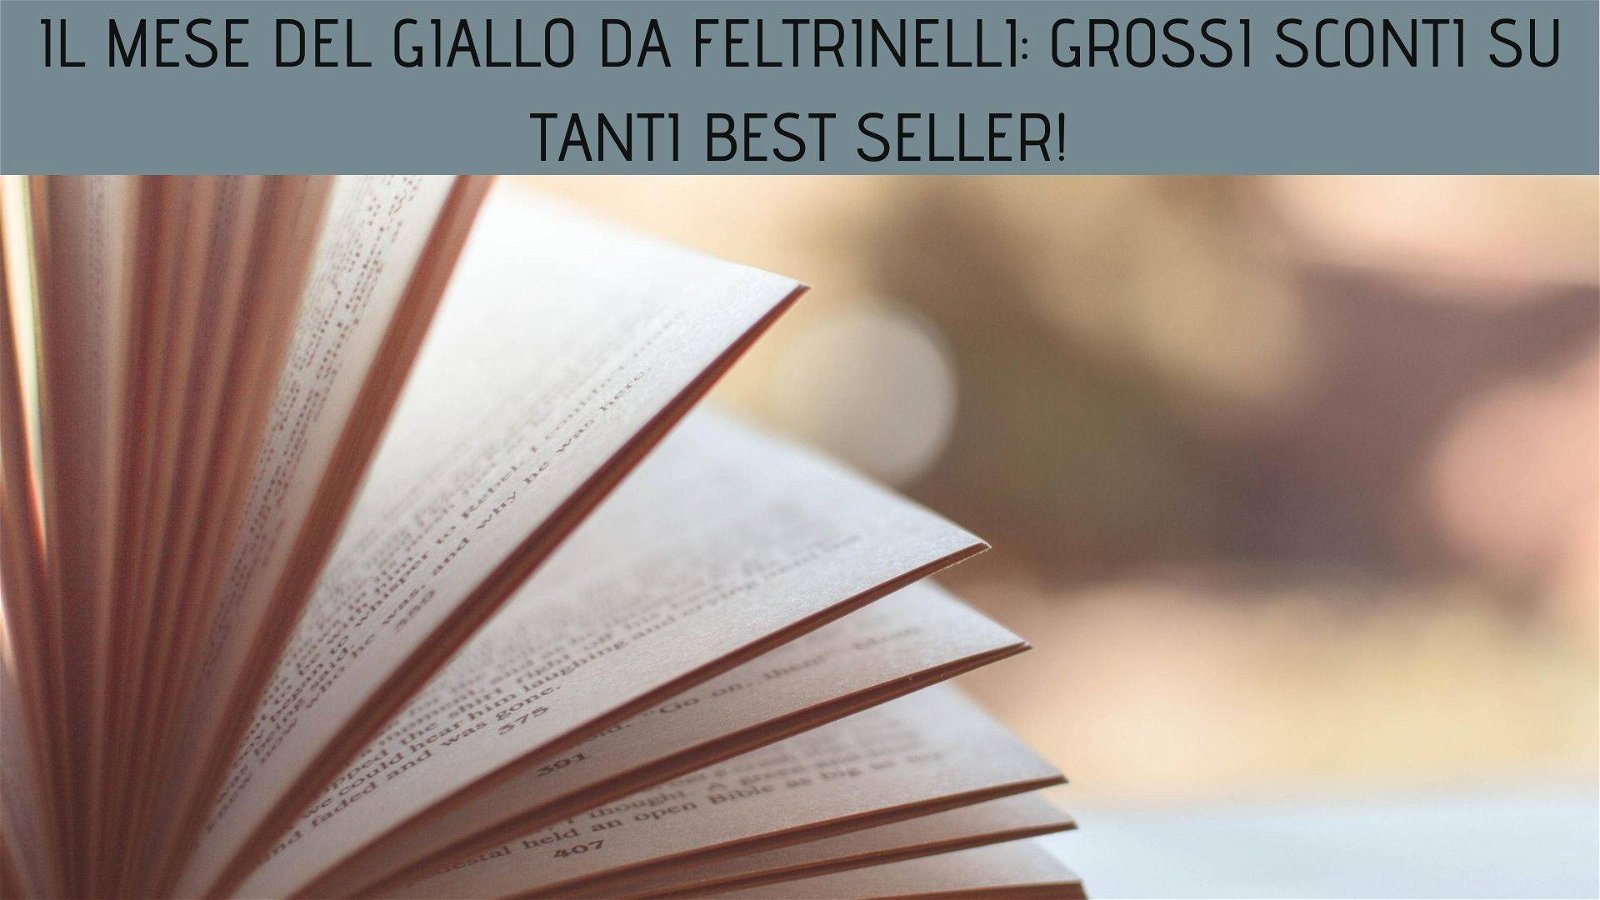 Immagine di Il mese del giallo da Feltrinelli: grossi sconti su tanti best seller!